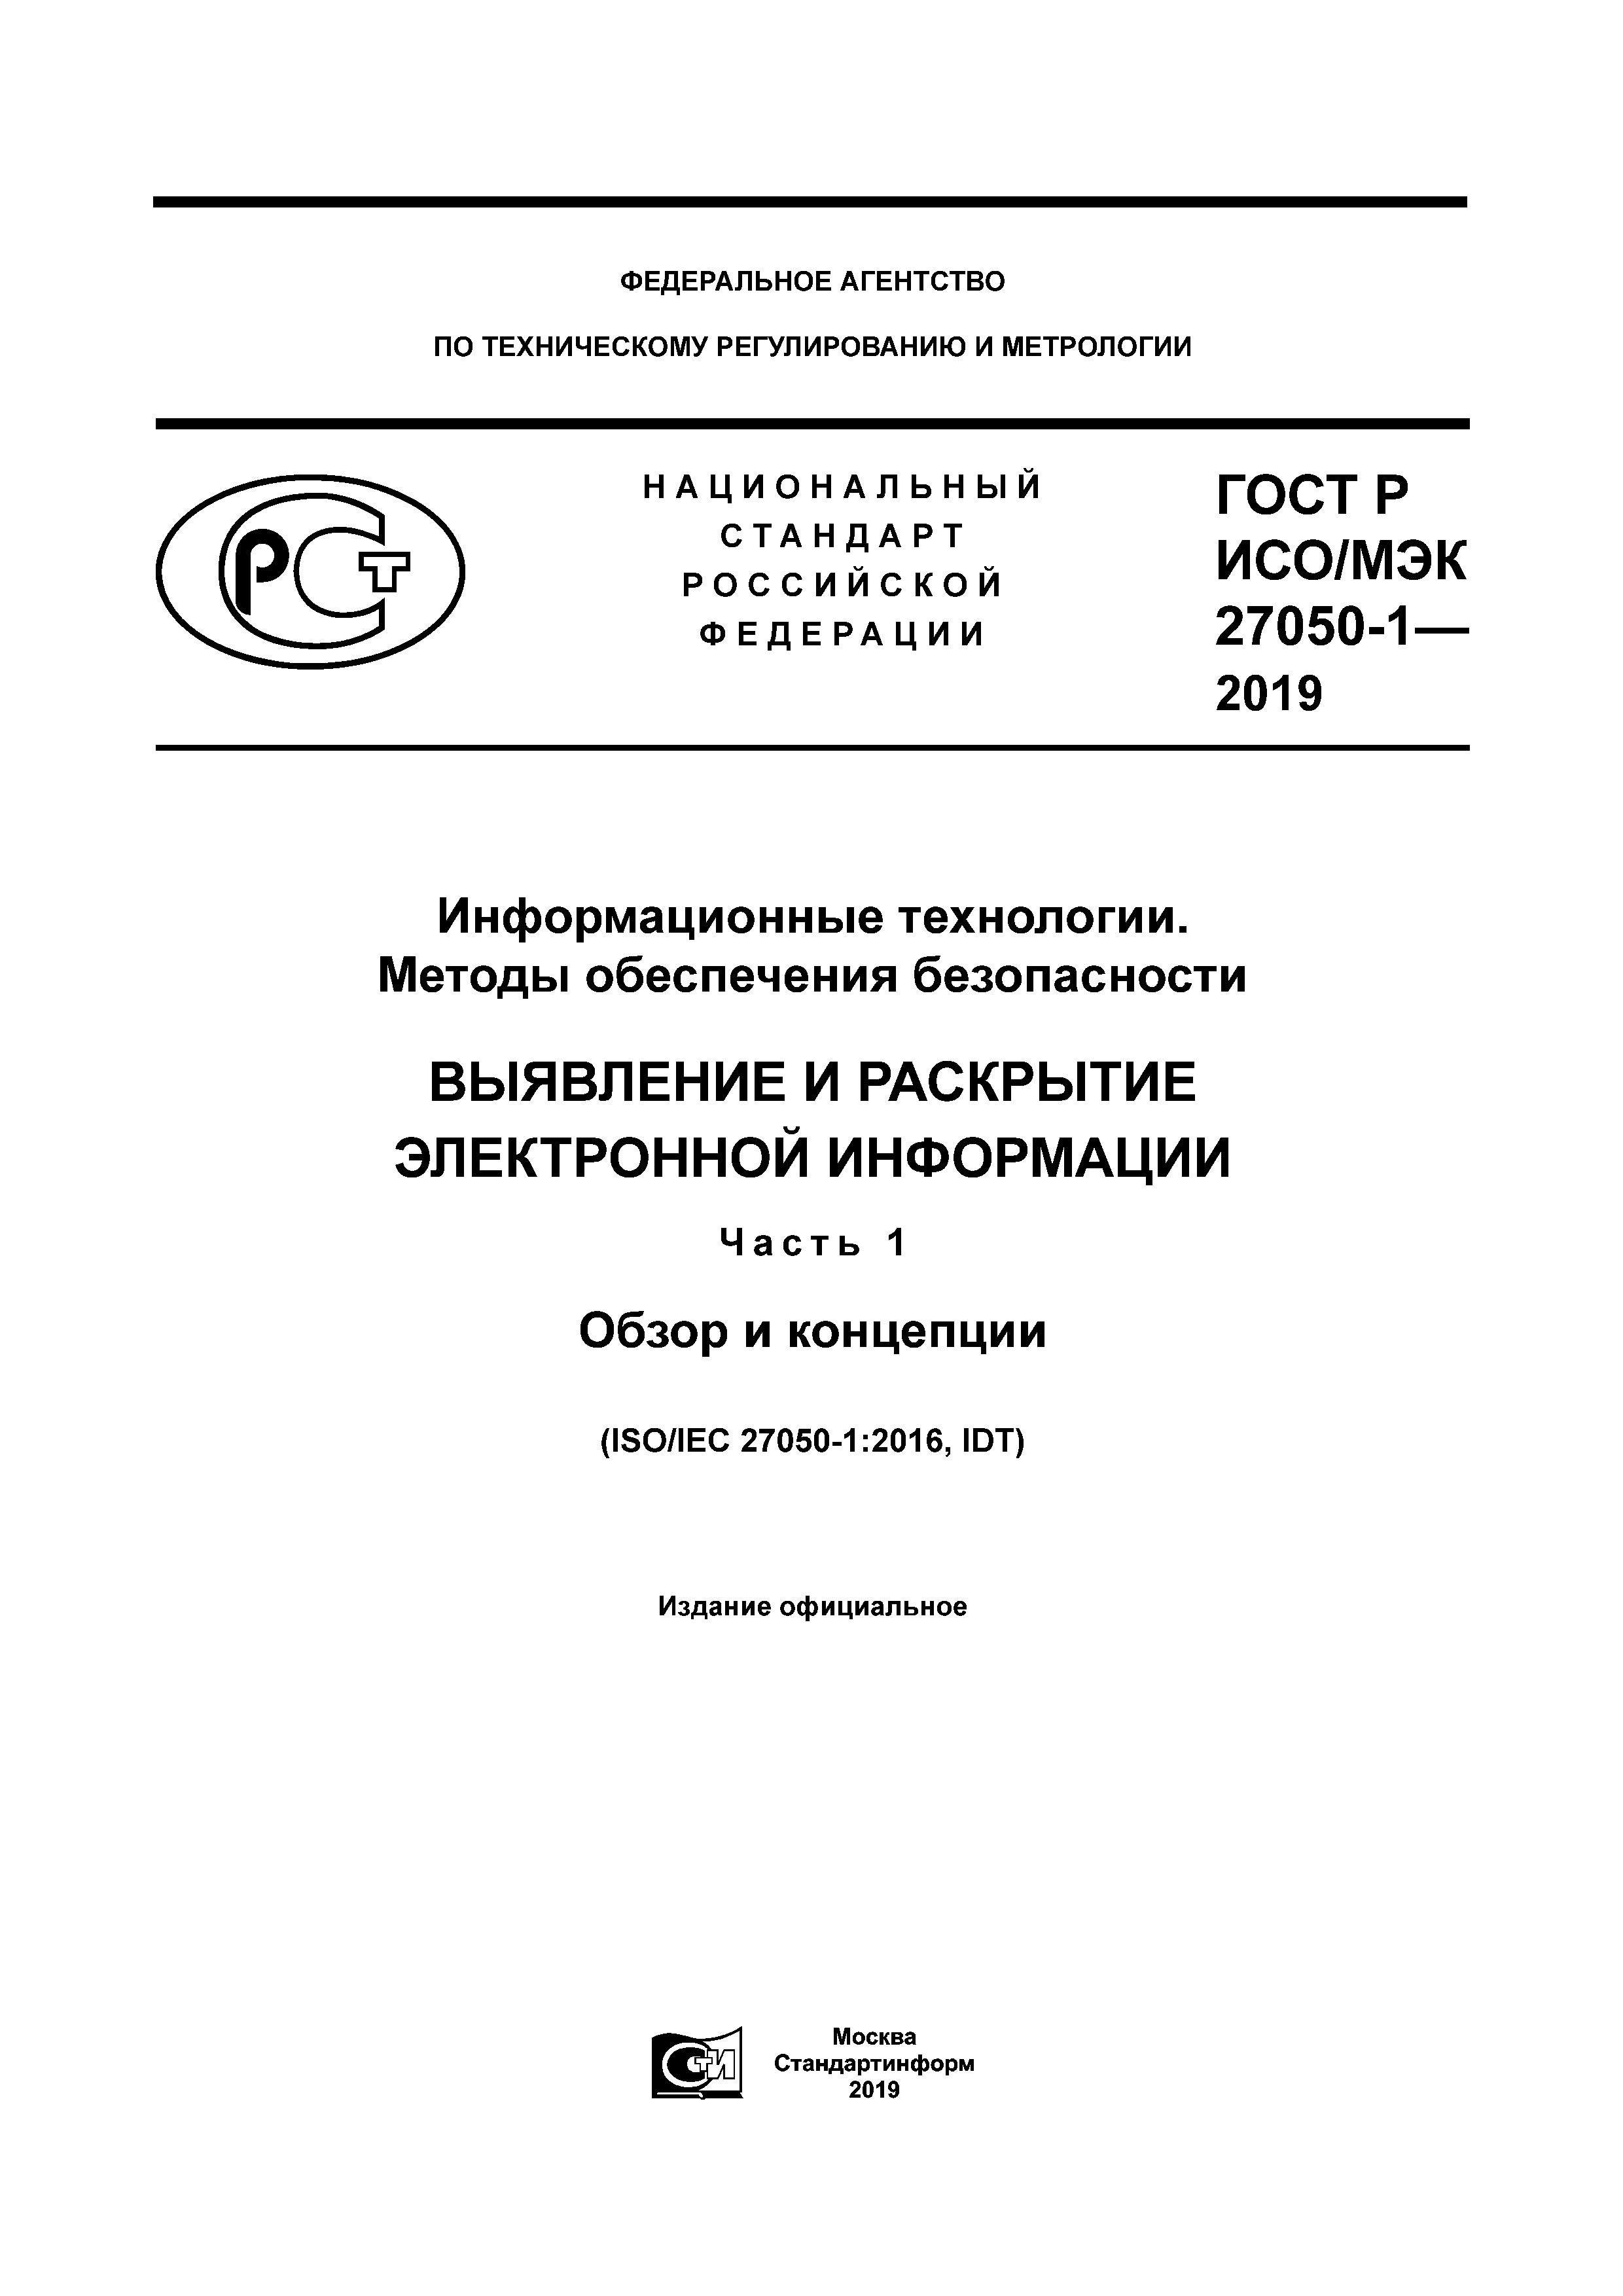 ГОСТ Р ИСО/МЭК 27050-1-2019